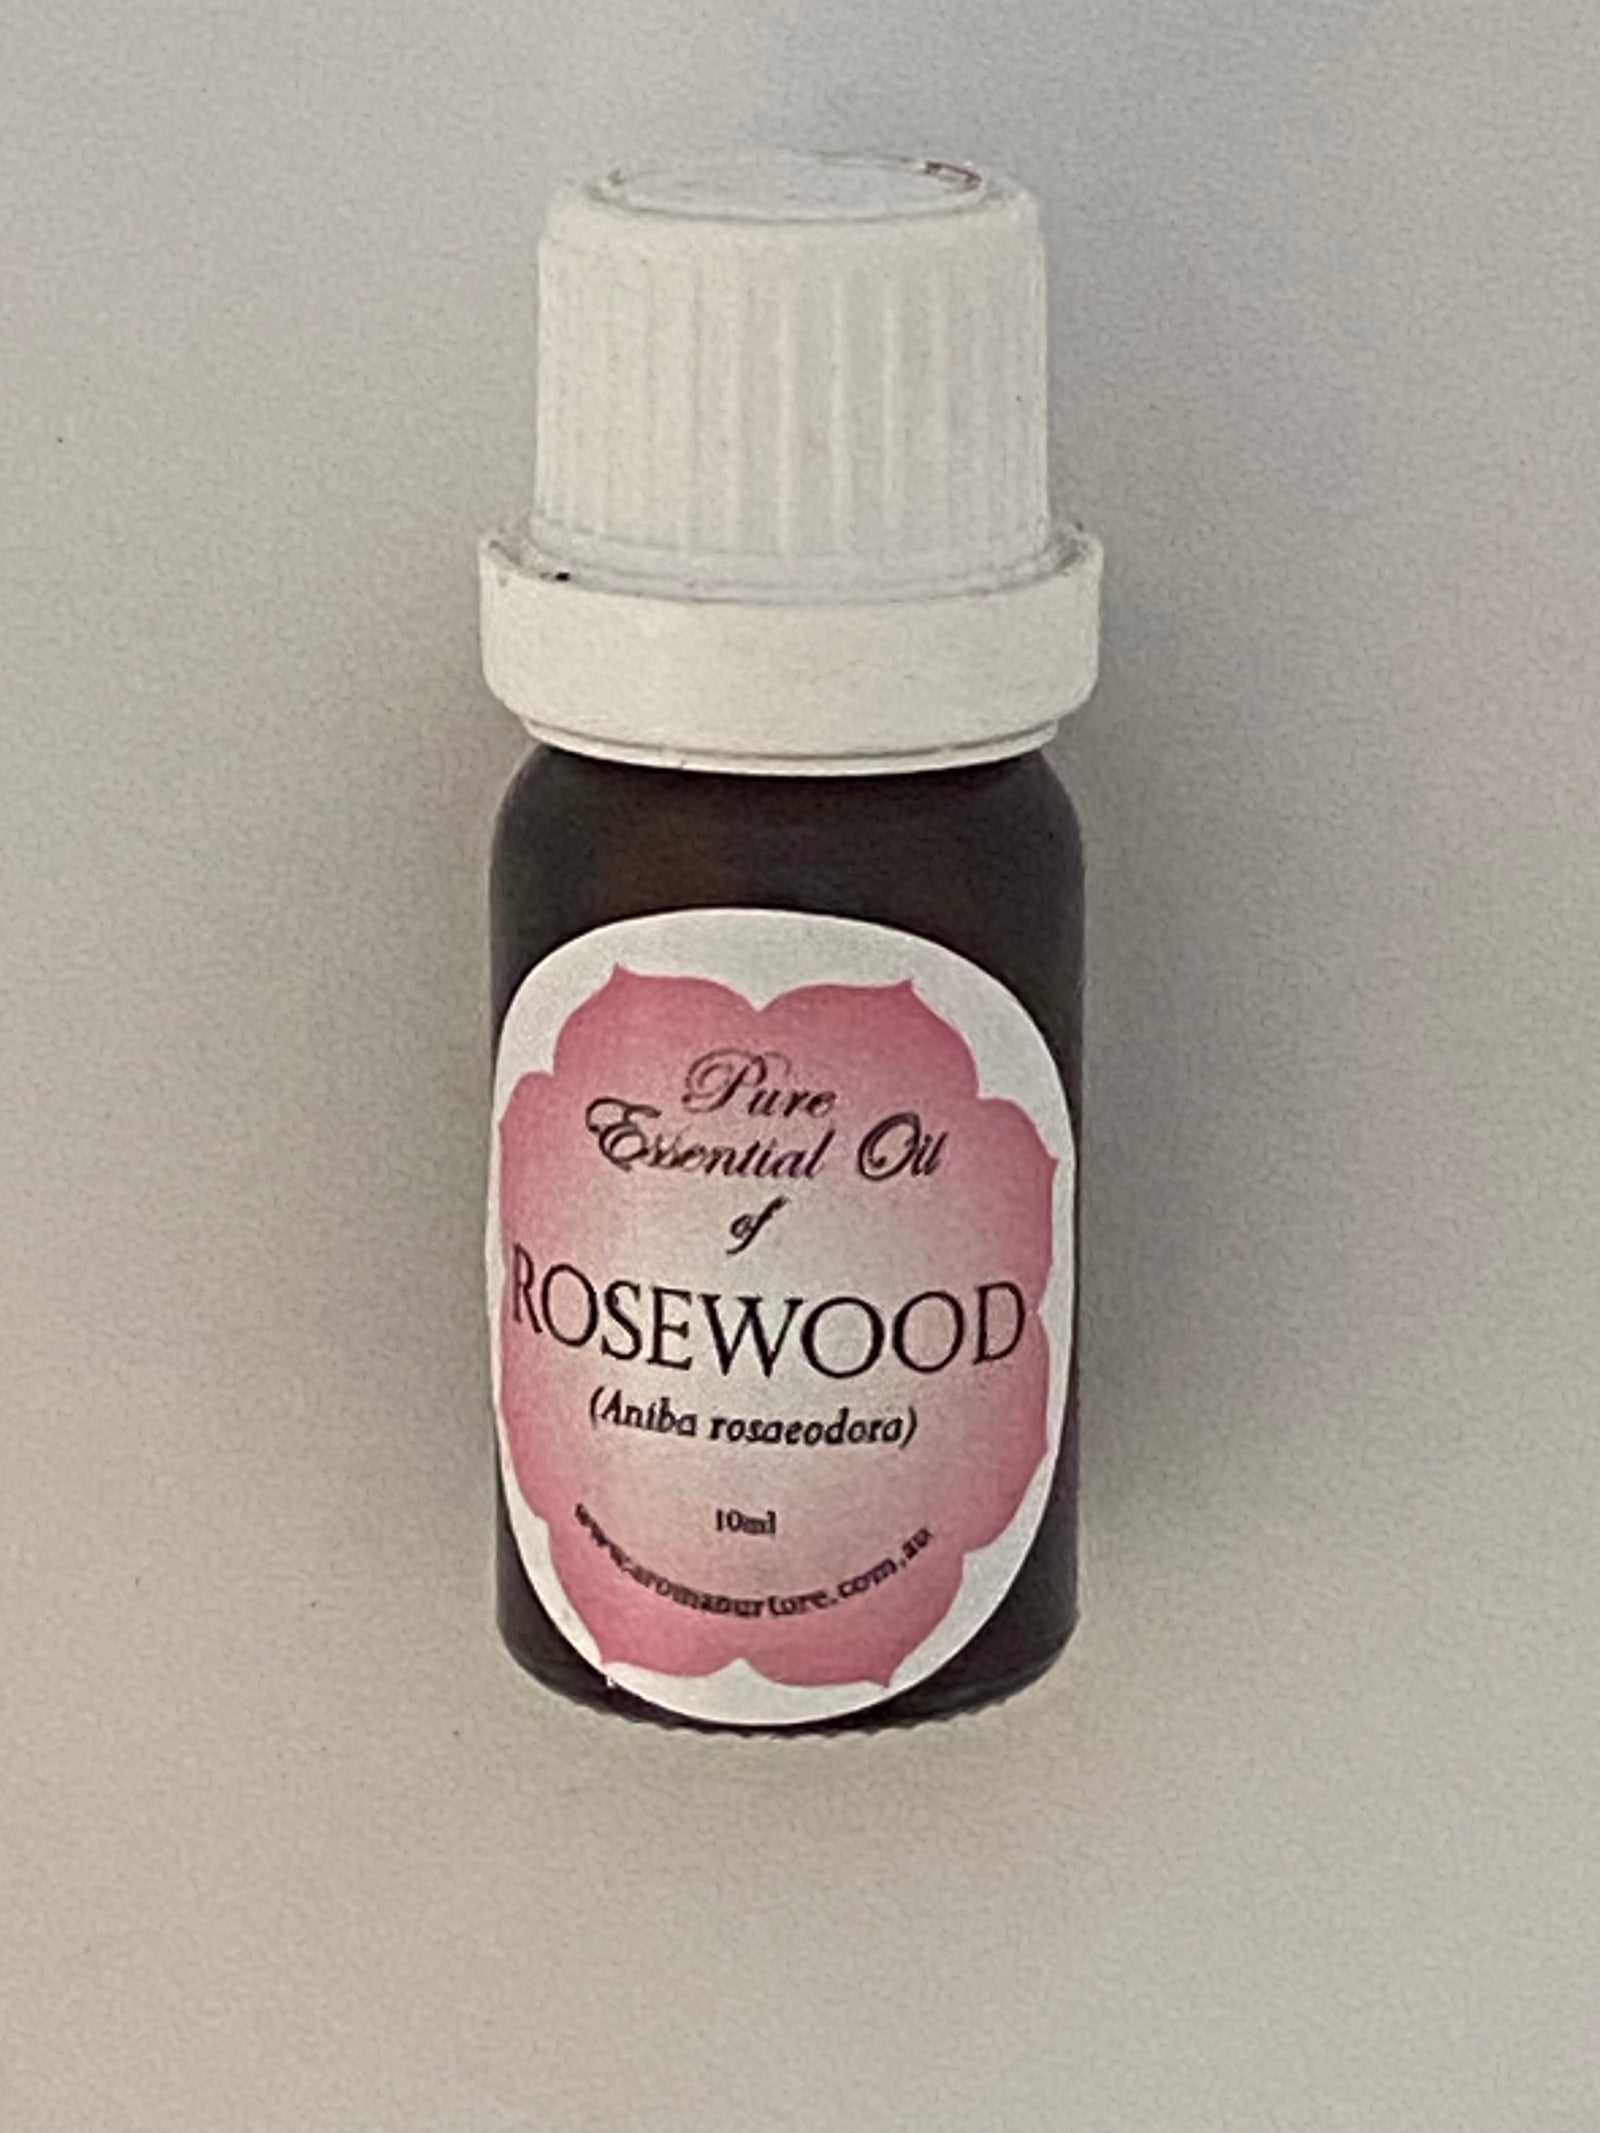 Pure Essential oil of Rosewood 10mls.(Aniba rosaeodora).